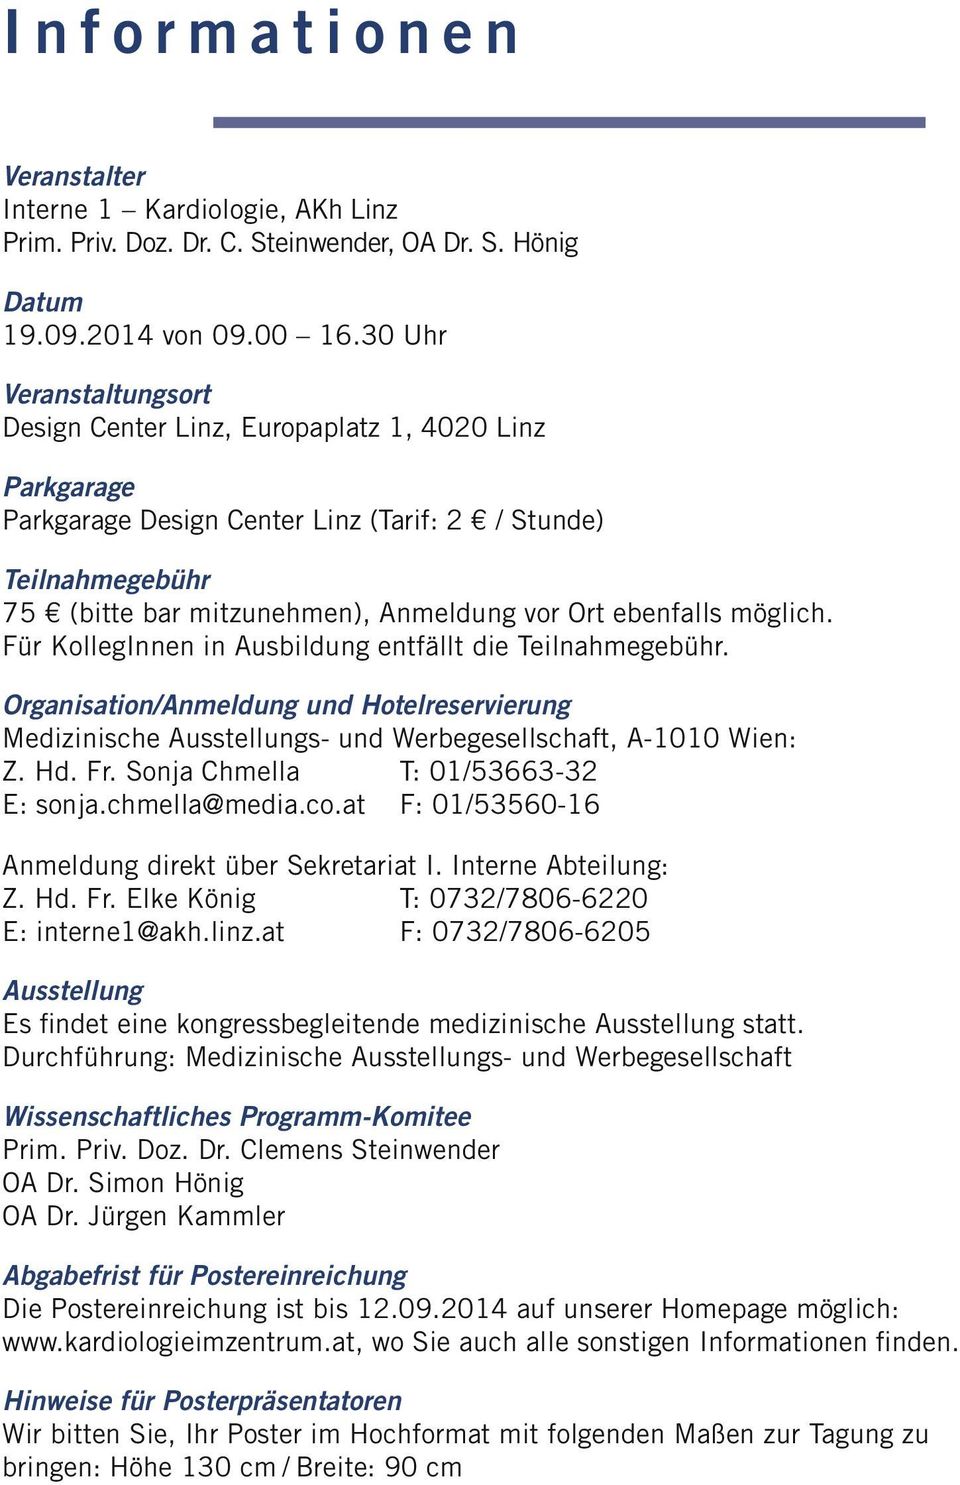 ebenfalls möglich. Organisation/Anmeldung und Hotelreservierung Medizinische Ausstellungs- und Werbegesellschaft, A-1010 Wien: Anmeldung direkt über Sekretariat I.